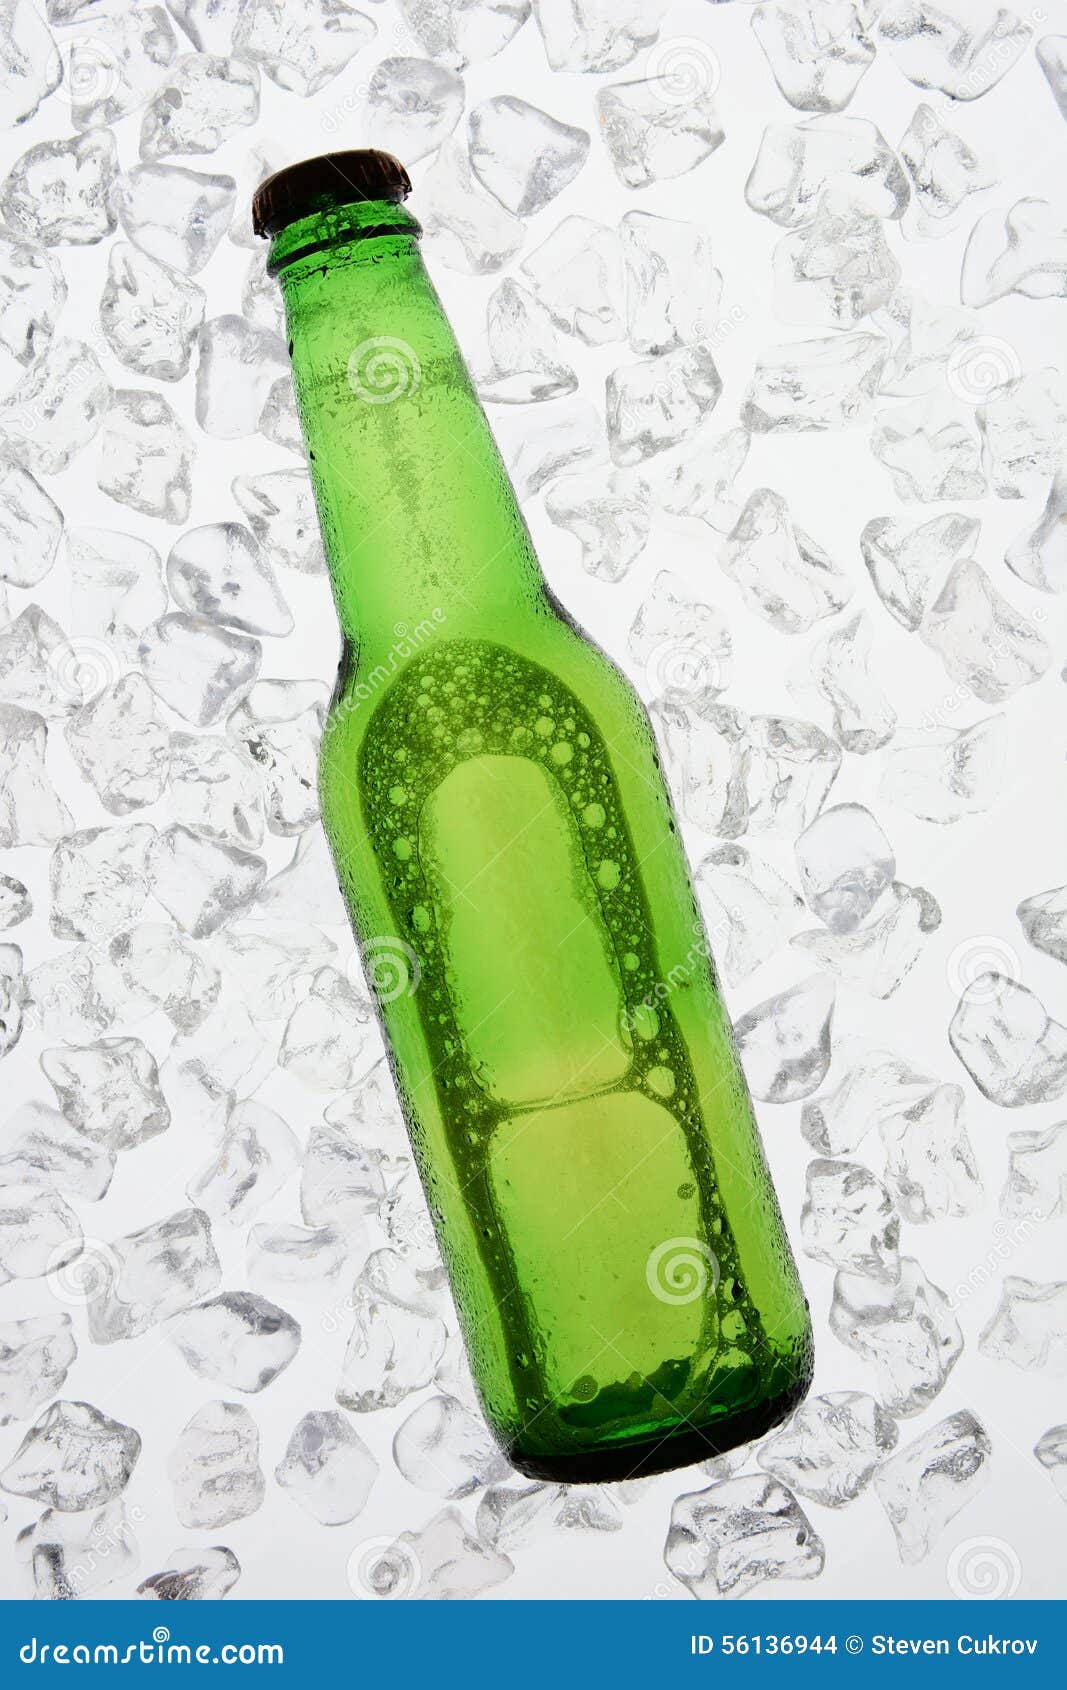 Groene Bierfles Backlit op Ijs. Één enkele groene fles bier backlit op een bed van ijs De fles heeft geen etiket Verticaal formaat